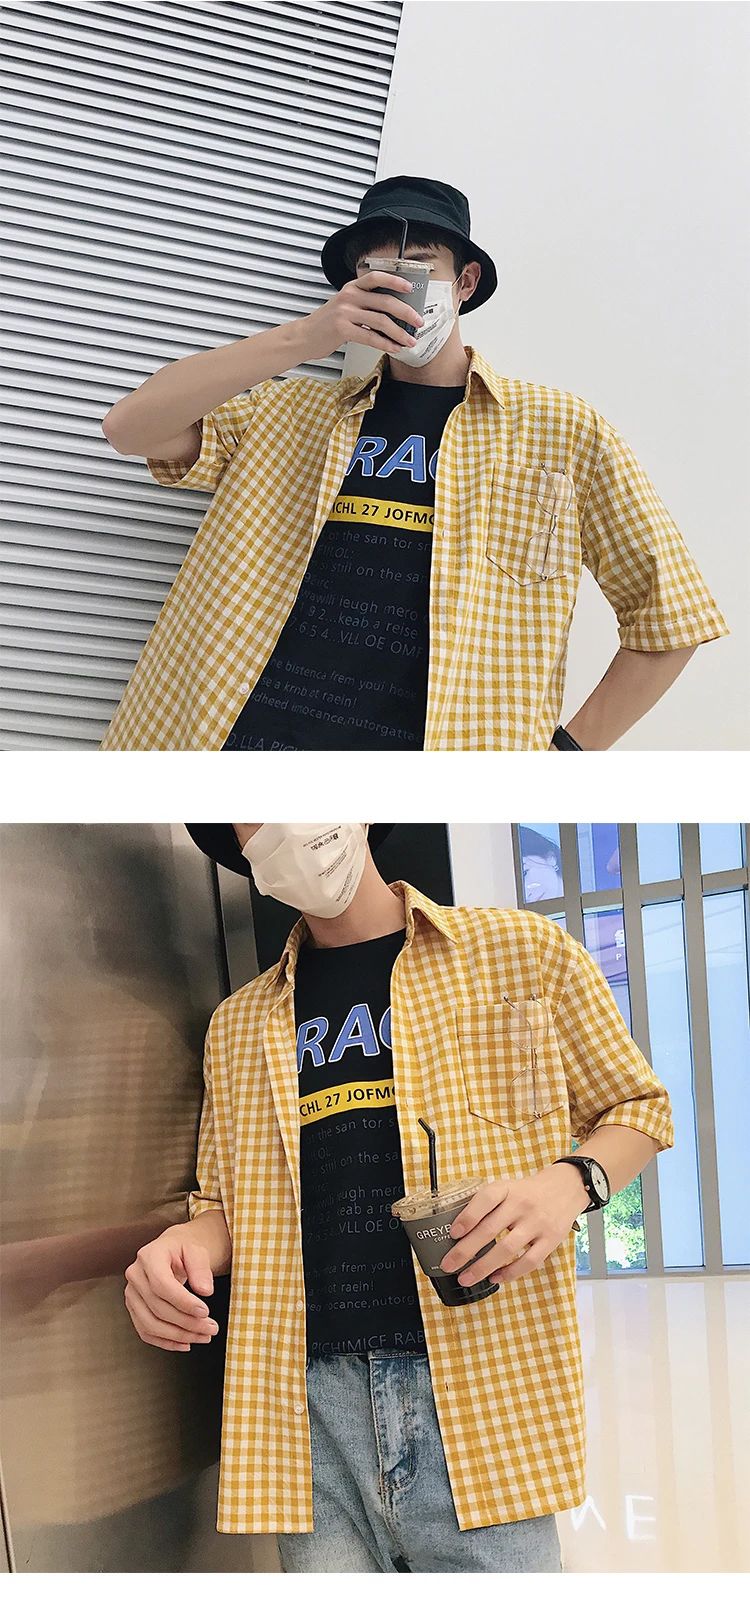 Летние шорты рукав мужской подростков корейский легко решетки студент Для досуга половина рубашка camisa Социальные camiseta masculina Мода